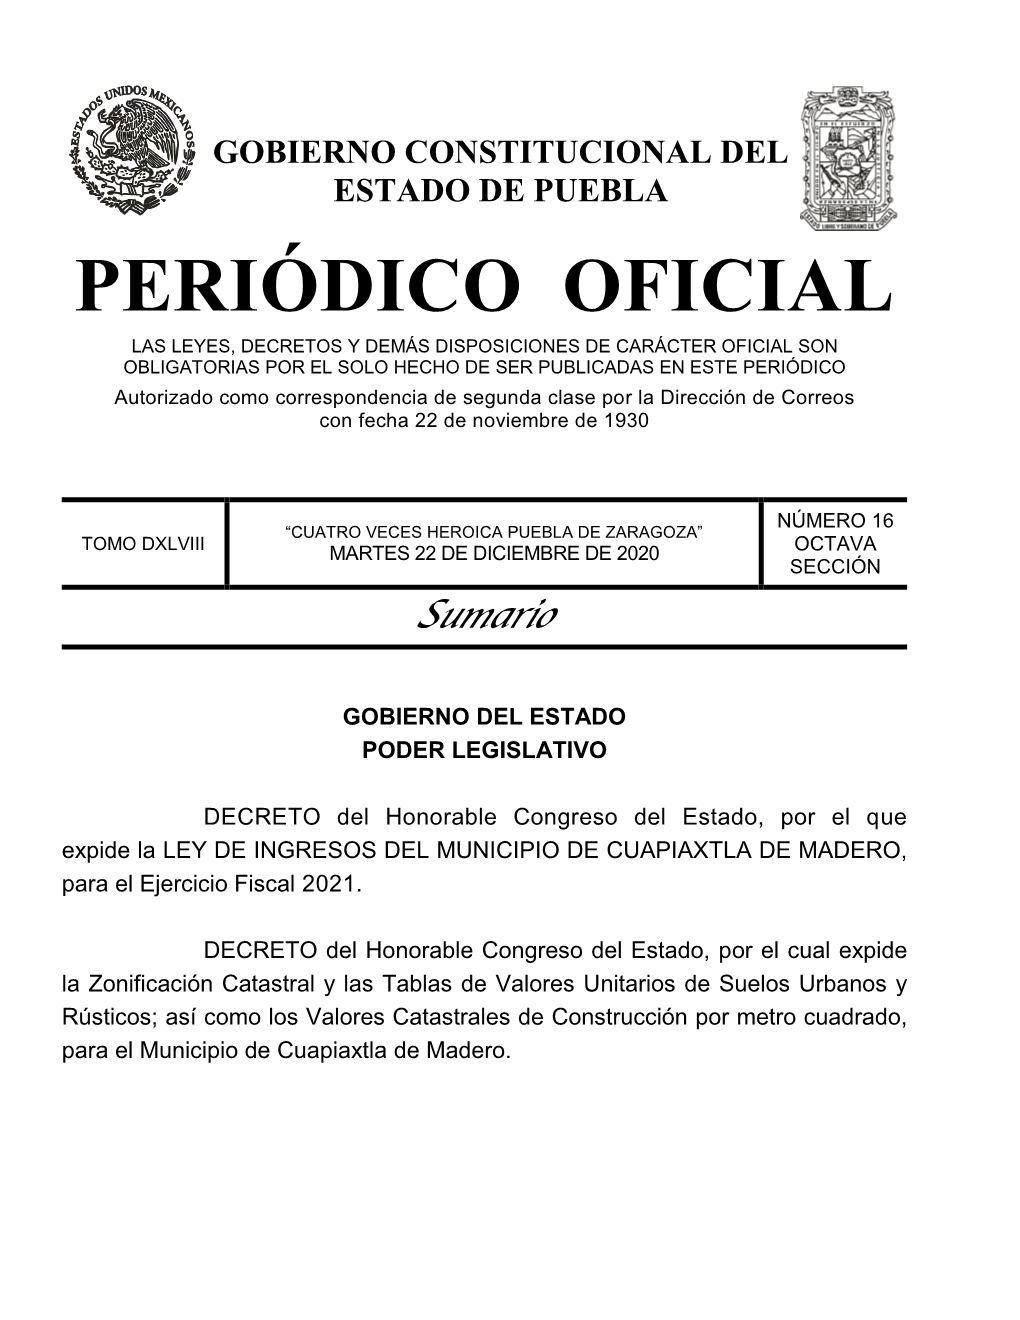 LEY DE INGRESOS DEL MUNICIPIO DE CUAPIAXTLA DE MADERO , Para El Ejercicio Fiscal 2021